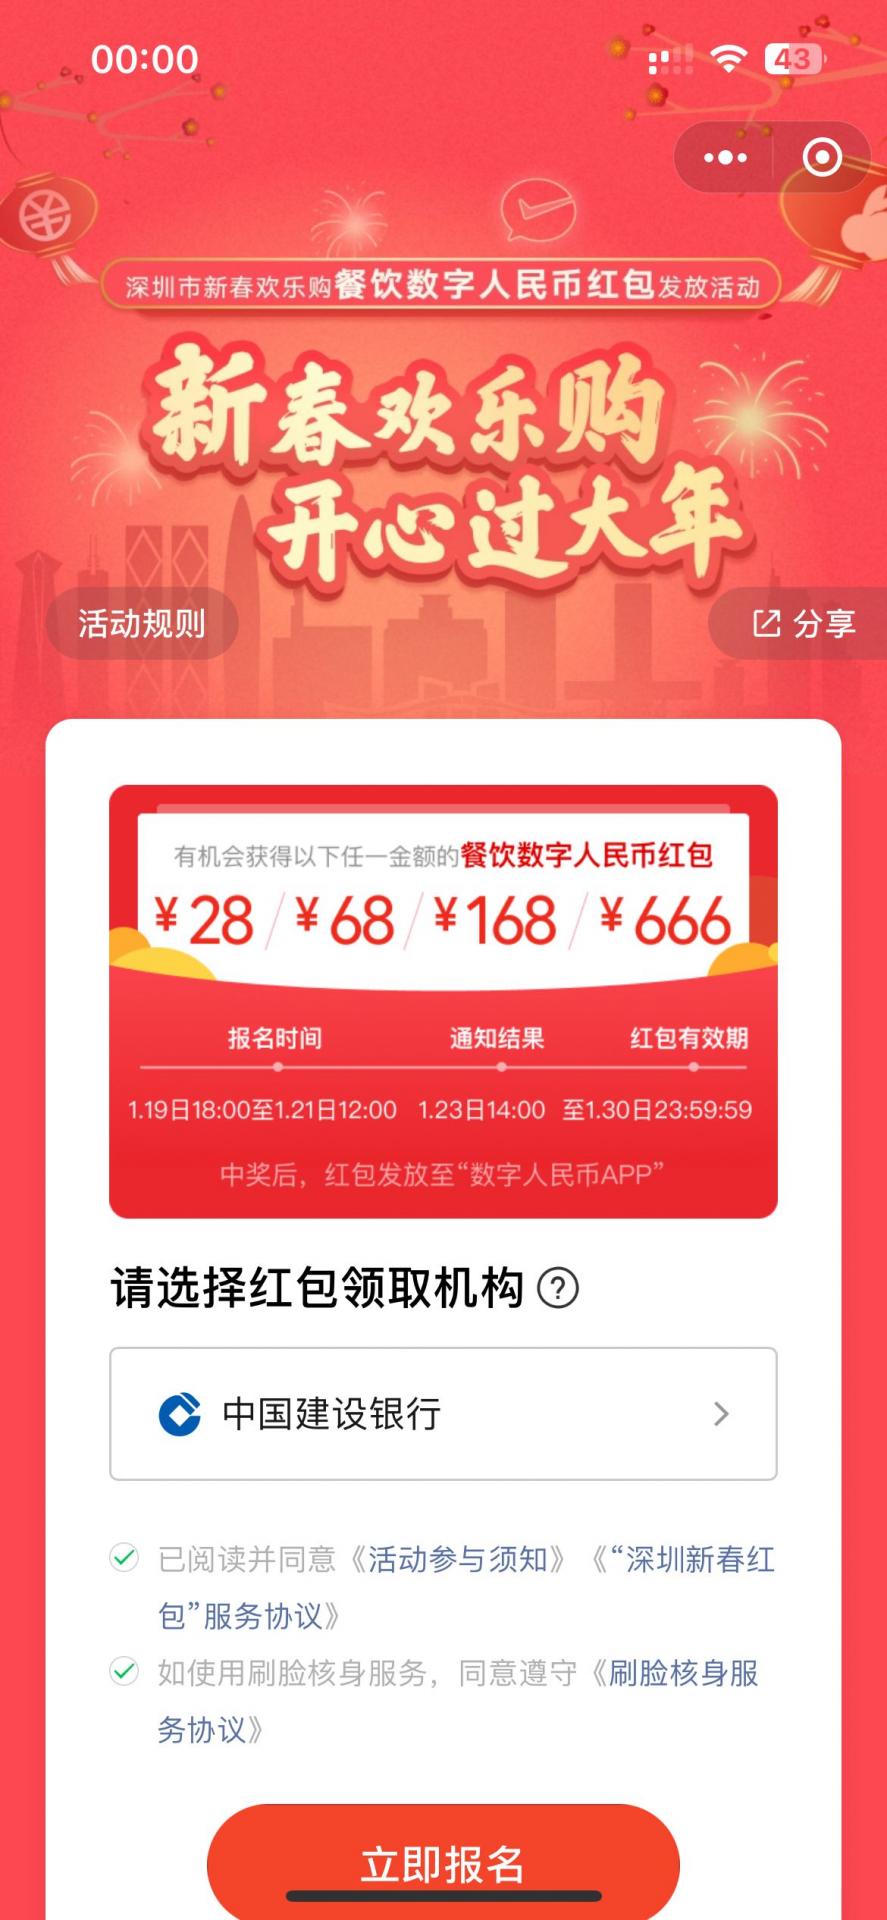 深圳新春欢乐购餐饮数字人民币红包发放活动